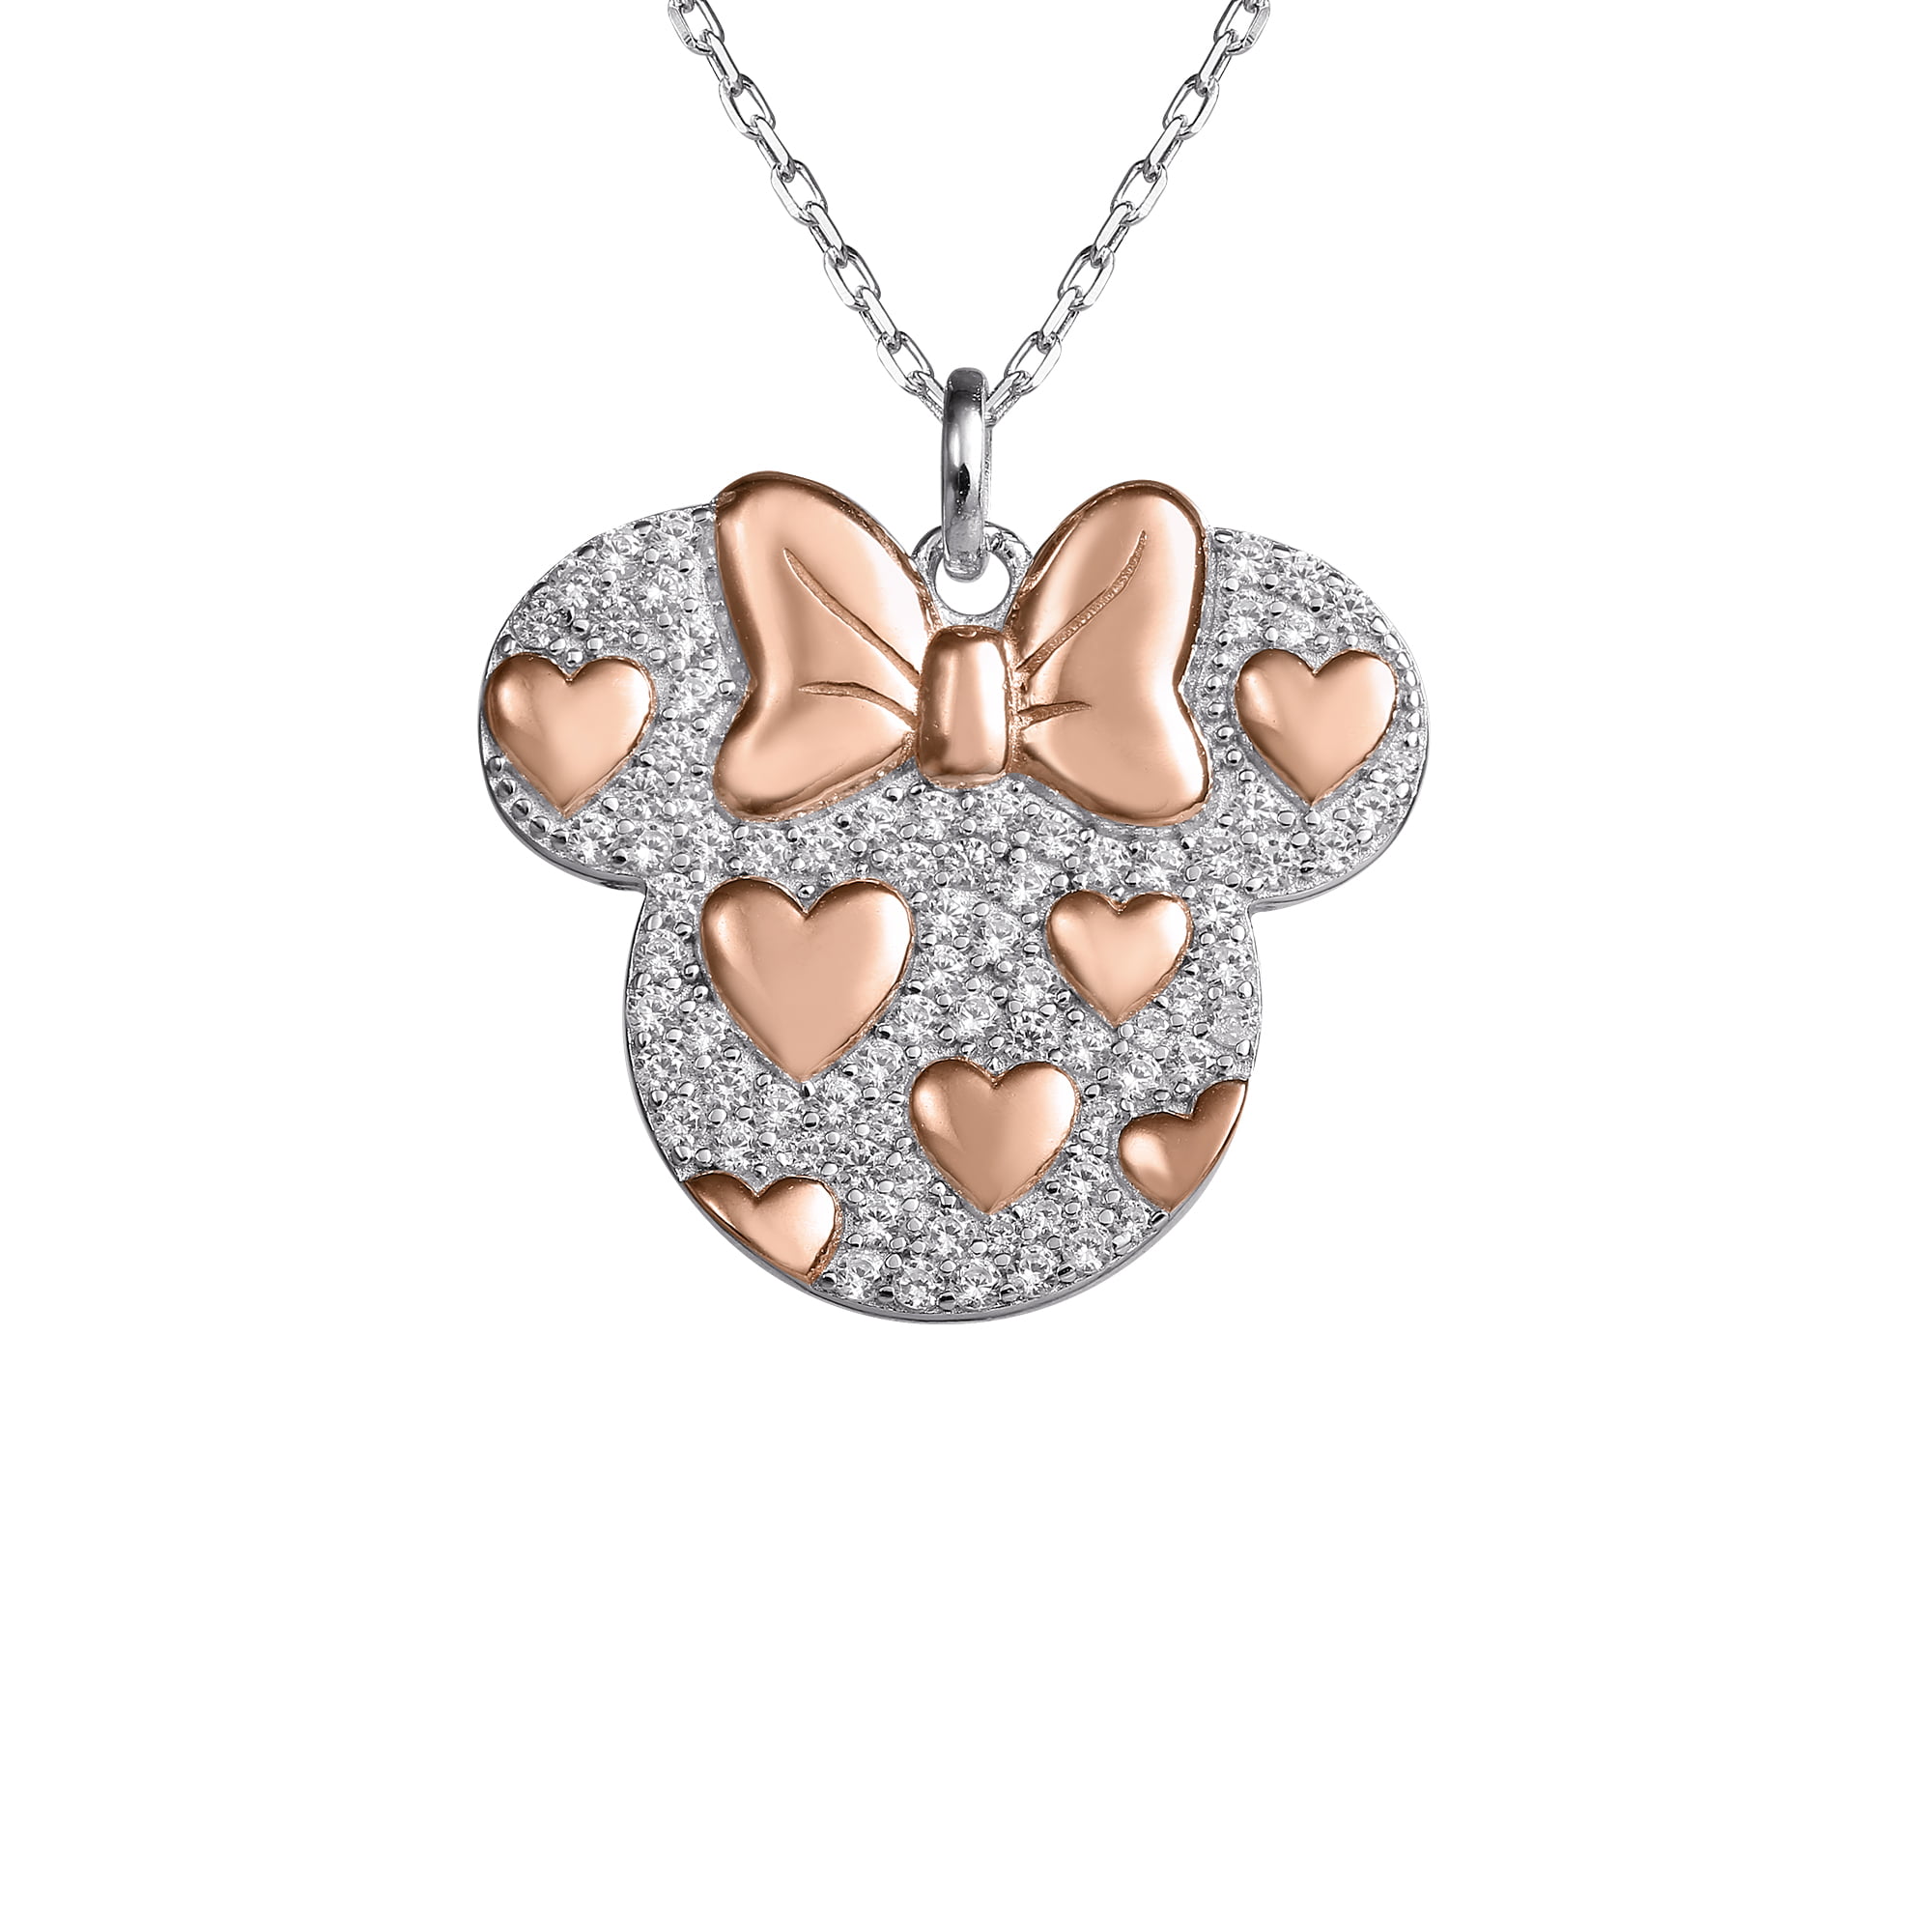 UK SILVER PLT CRYSTAL LOVE HEART NECKLACE Jewellery Gift Idea Wife Girlfriend 